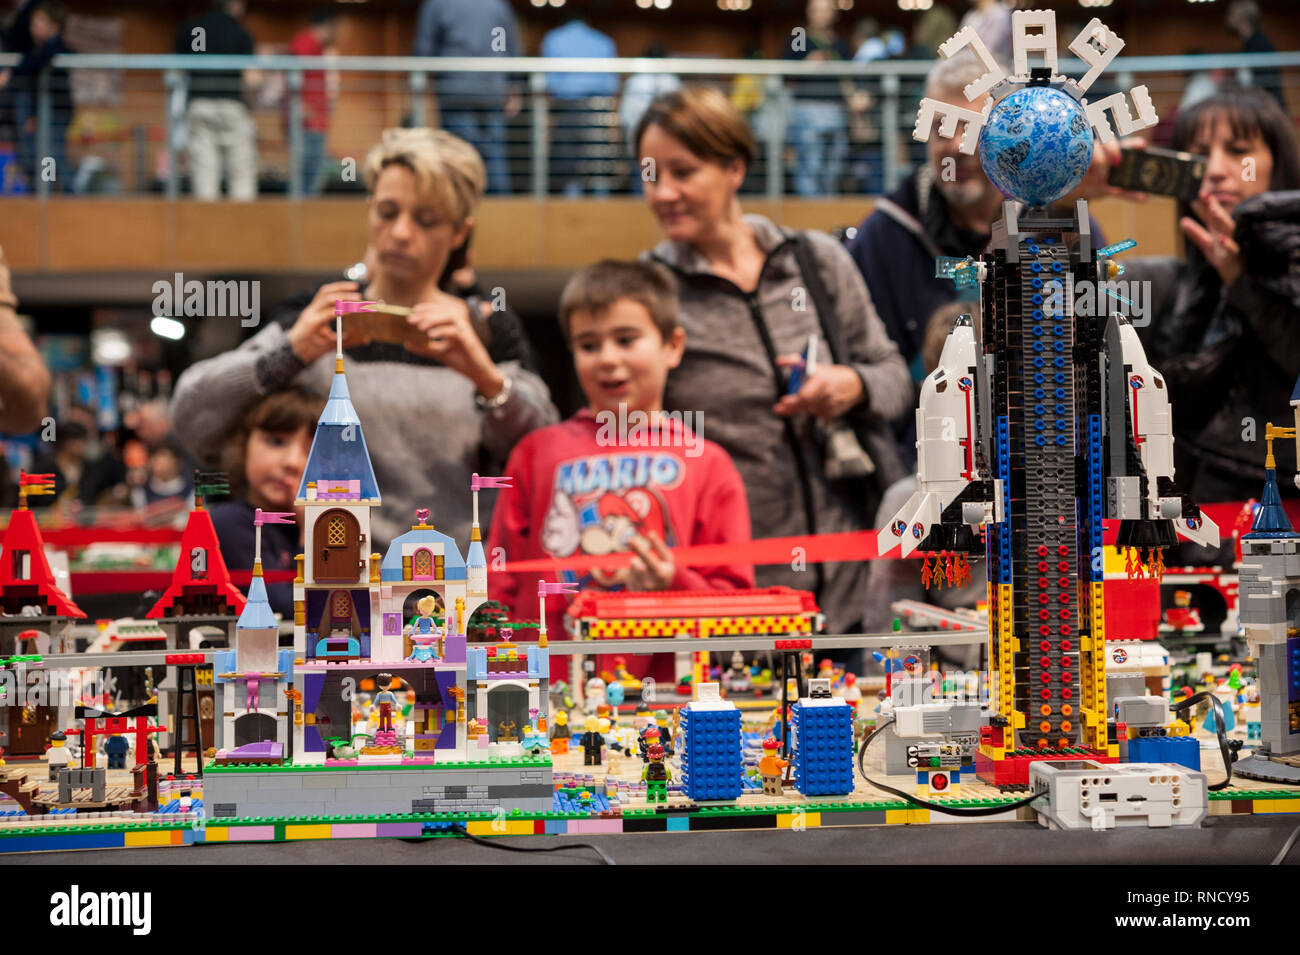 Firenze, Italia - 11 Novembre 2017: Visitatori presso la "Firenze mattoni Festival' ammirato un plastico costruito interamente con Lego mattoni in plastica. Foto Stock